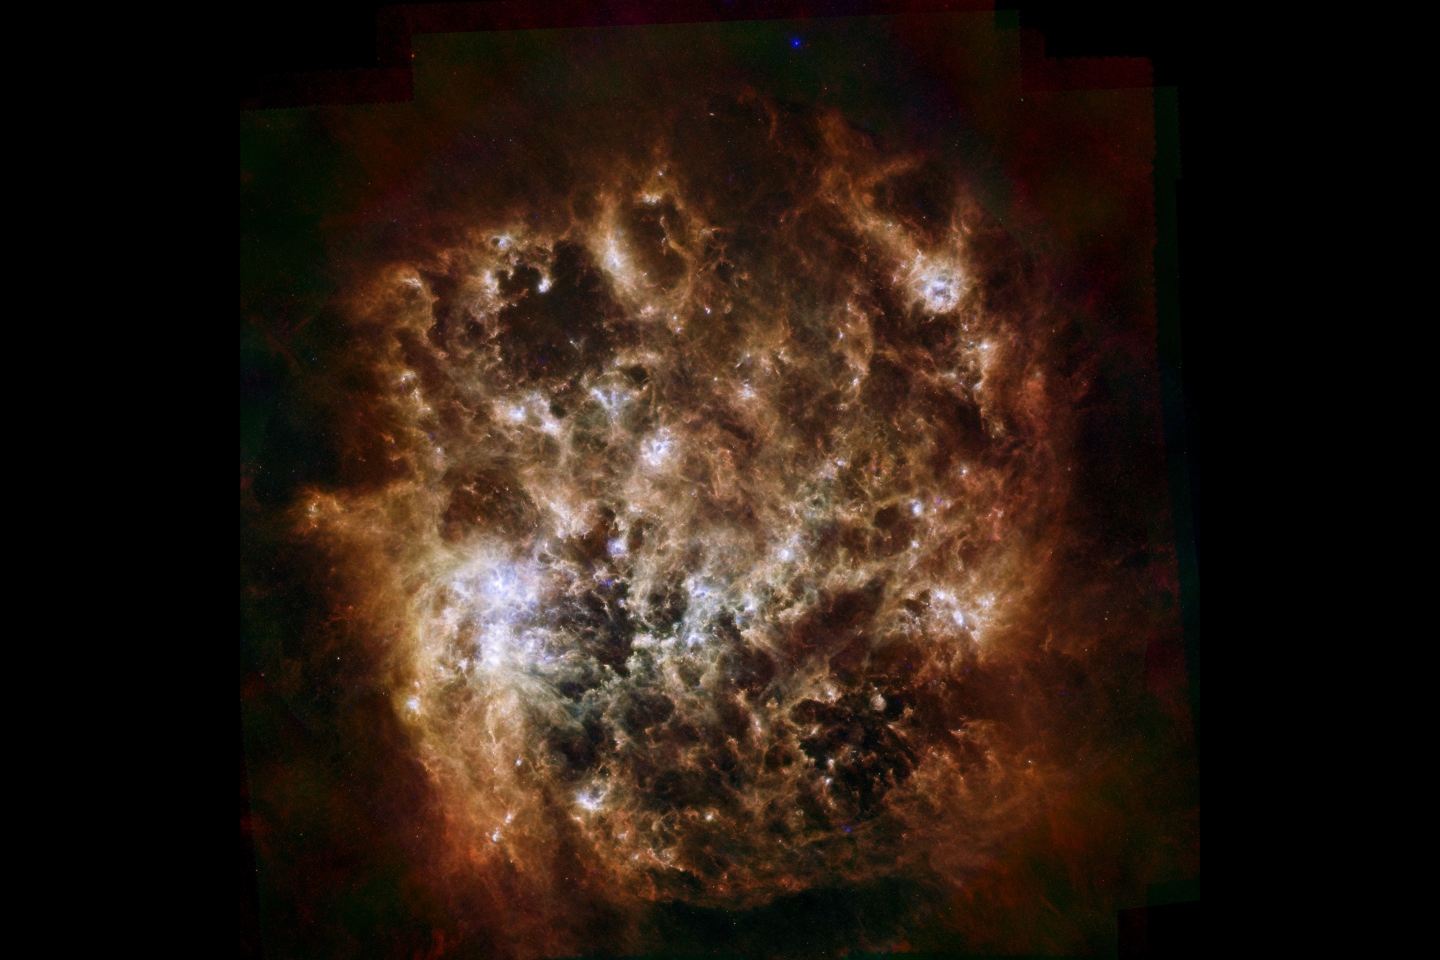 Карликовая галактика Большое Магелланово Облако, наблюдаемая в инфракрасном свете Гершельской космической обсерваторией. В таких регионах пространства, как этот, рождаются новые звезды из смеси элементов и космической пыли.